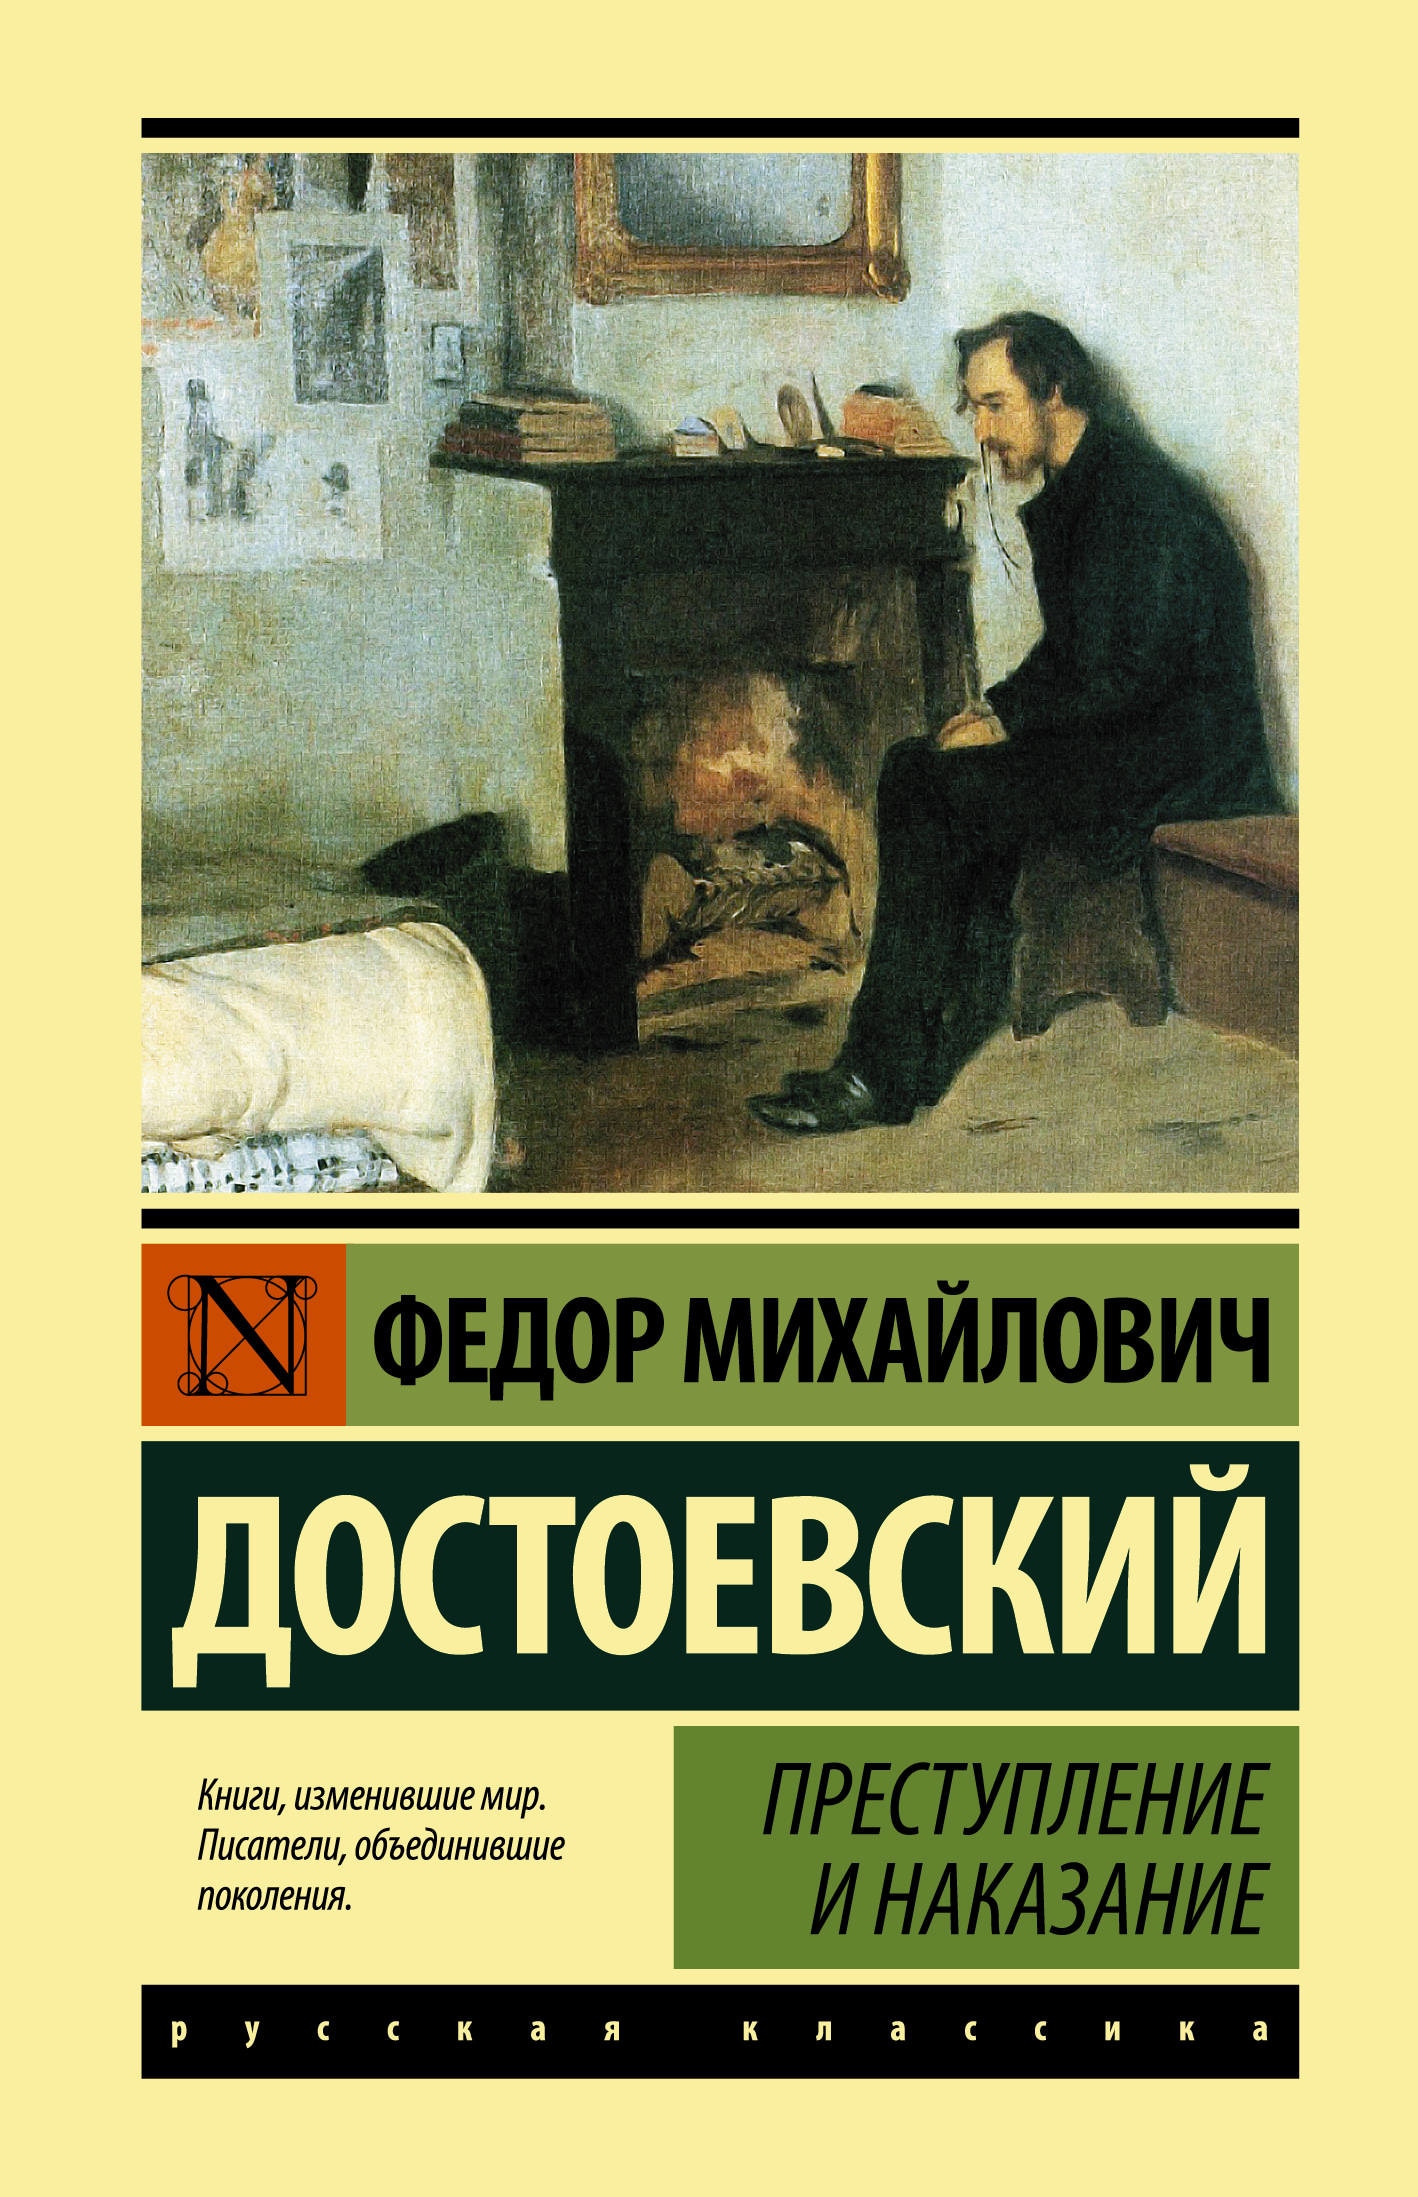 Книга «Преступление и наказание» Федор Достоевский — 21 сентября 2021 г.